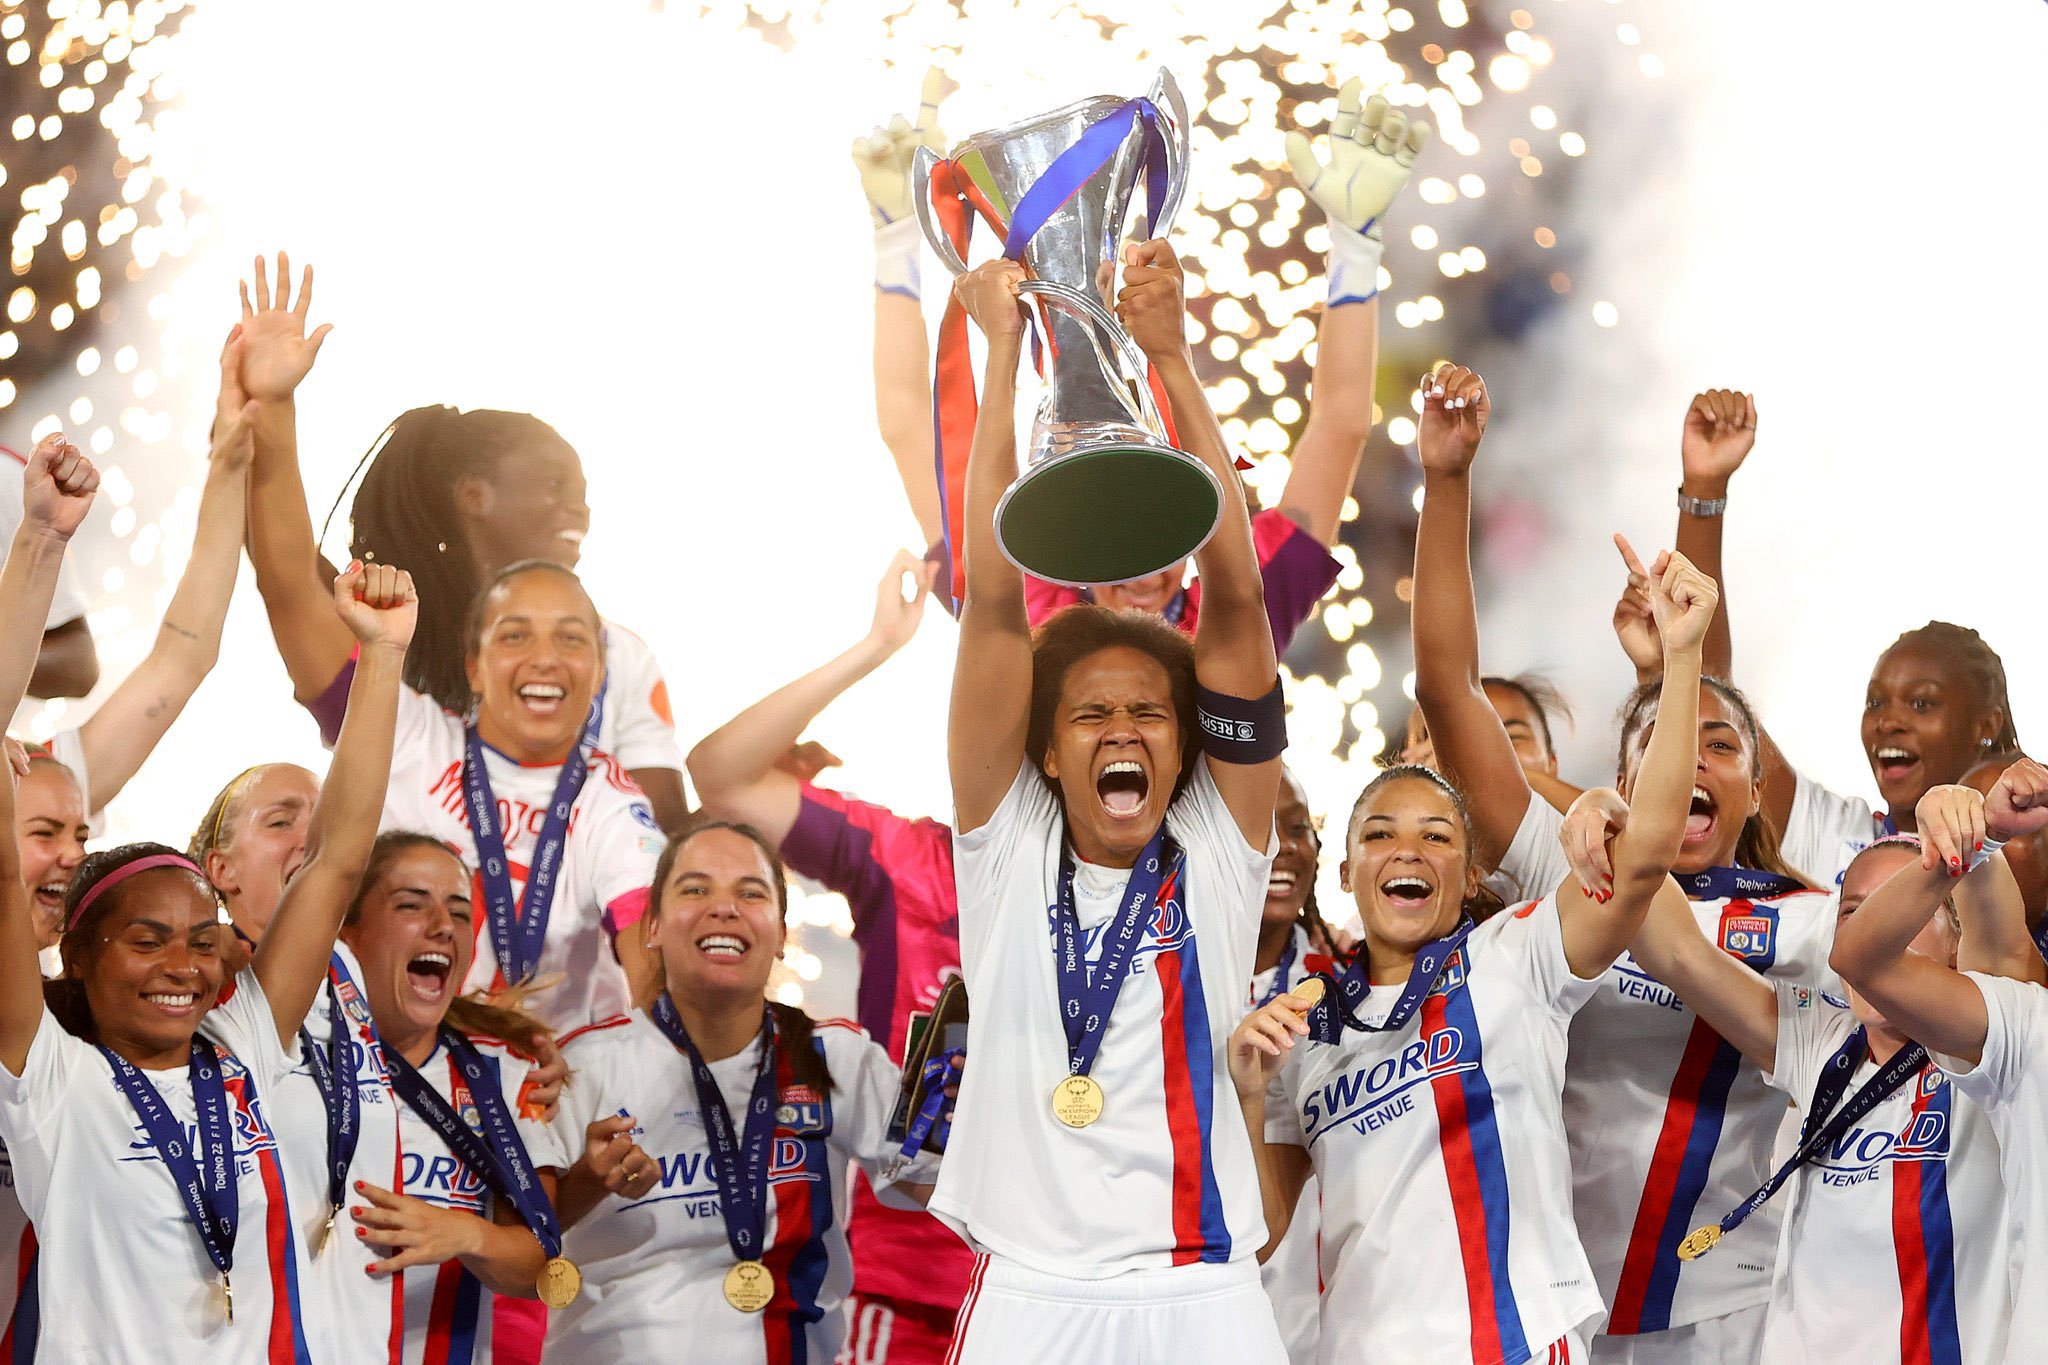 Lyon vence o Barcelona e volta a conquistar a Liga dos Campeões feminina, futebol internacional